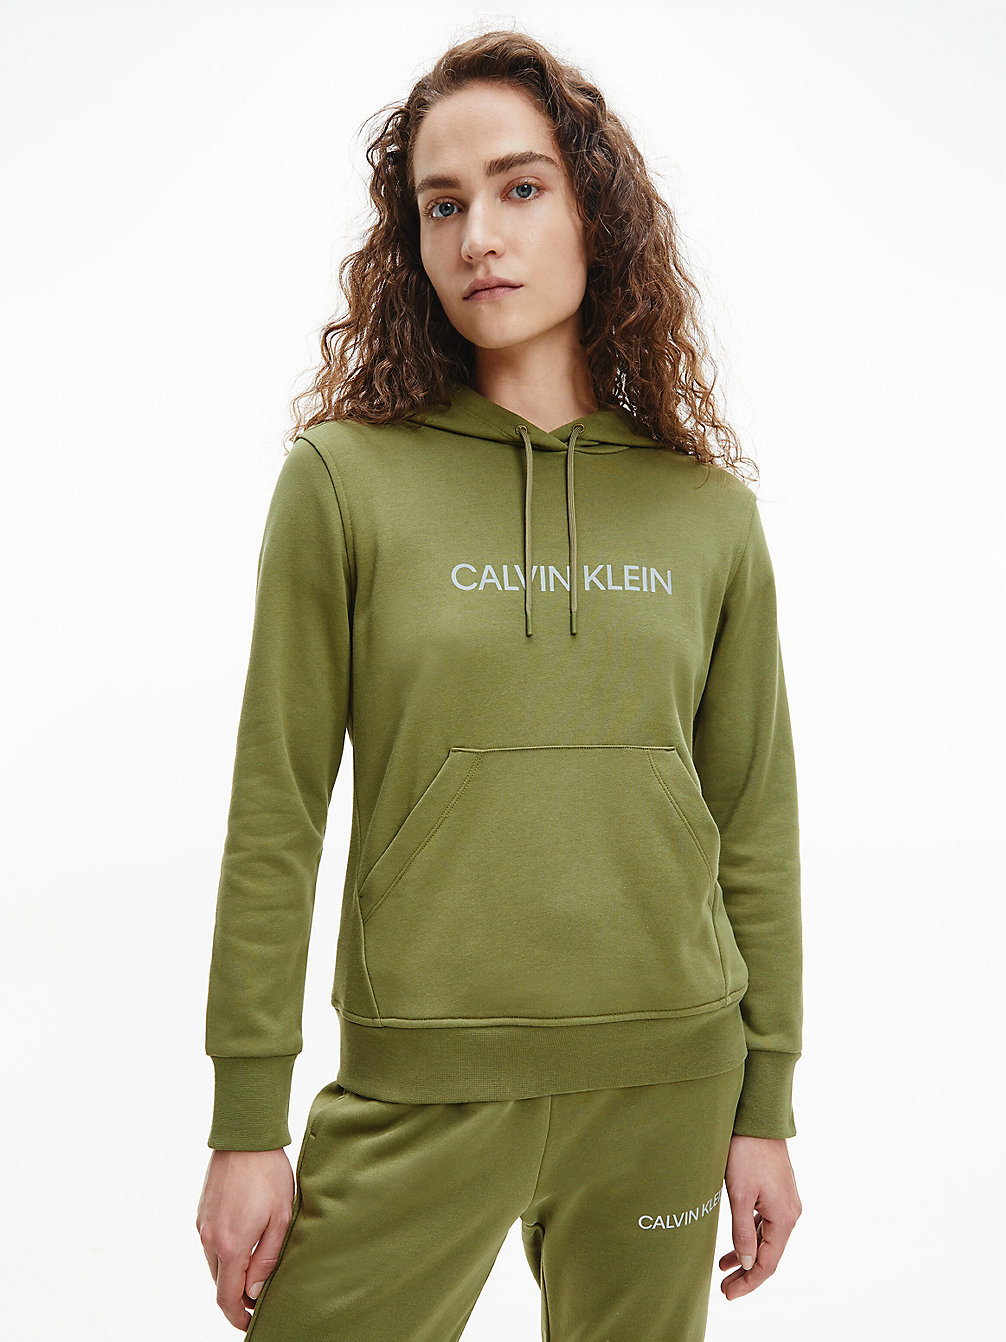 CAPULET OLIVE Felpa Con Cappuccio E Logo undefined donna Calvin Klein